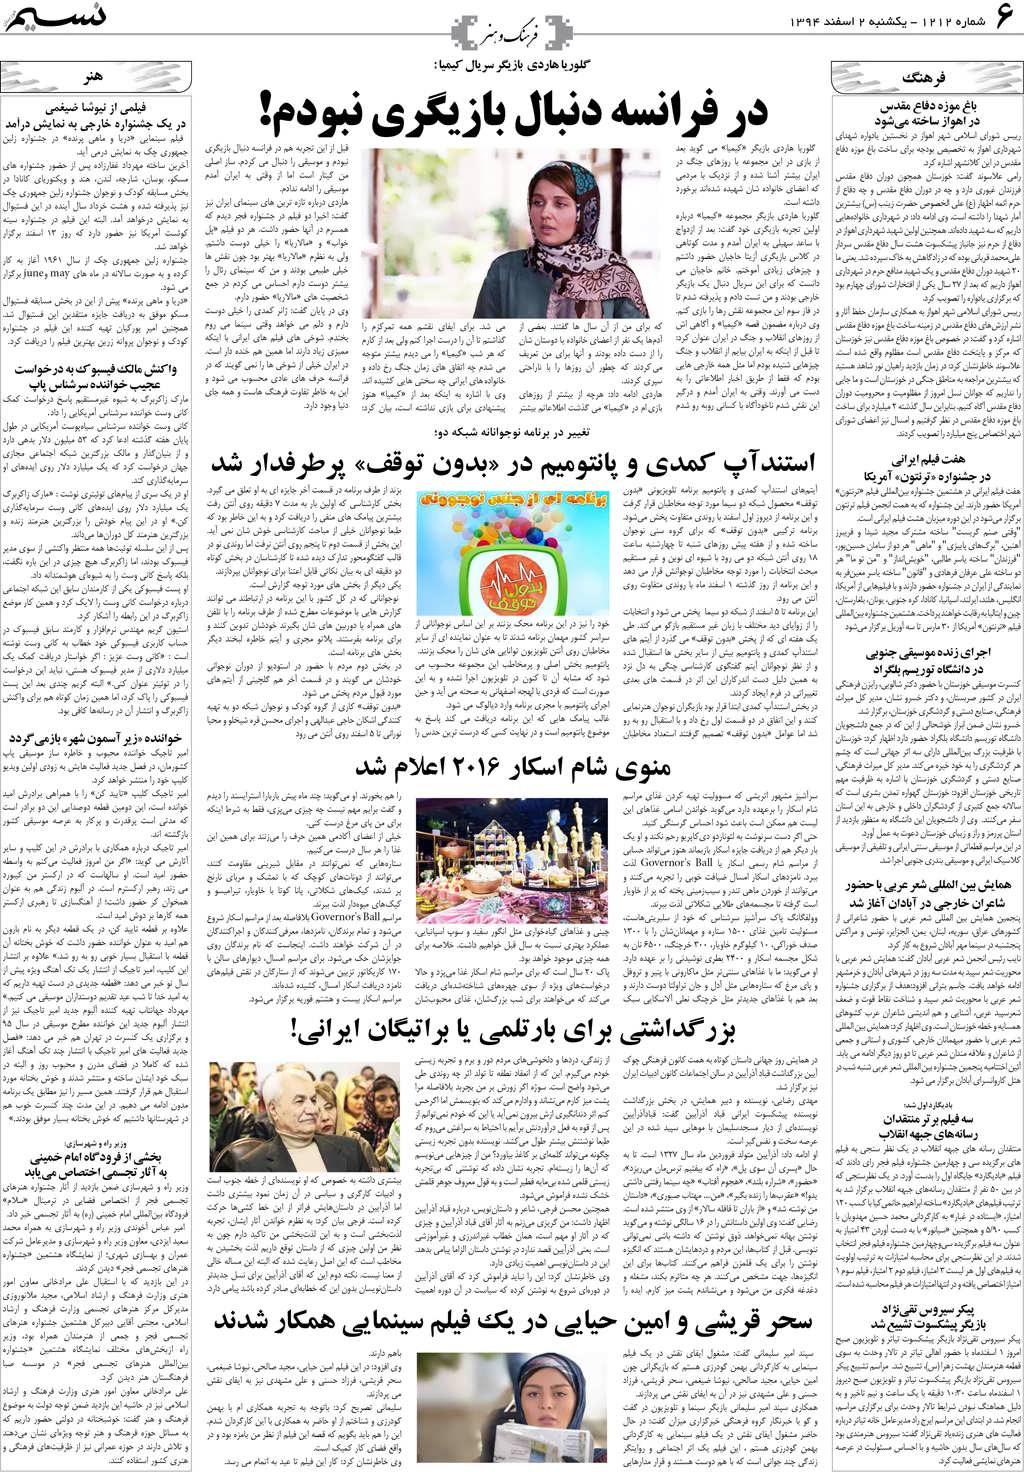 صفحه فرهنگ و هنر روزنامه نسیم شماره 1212